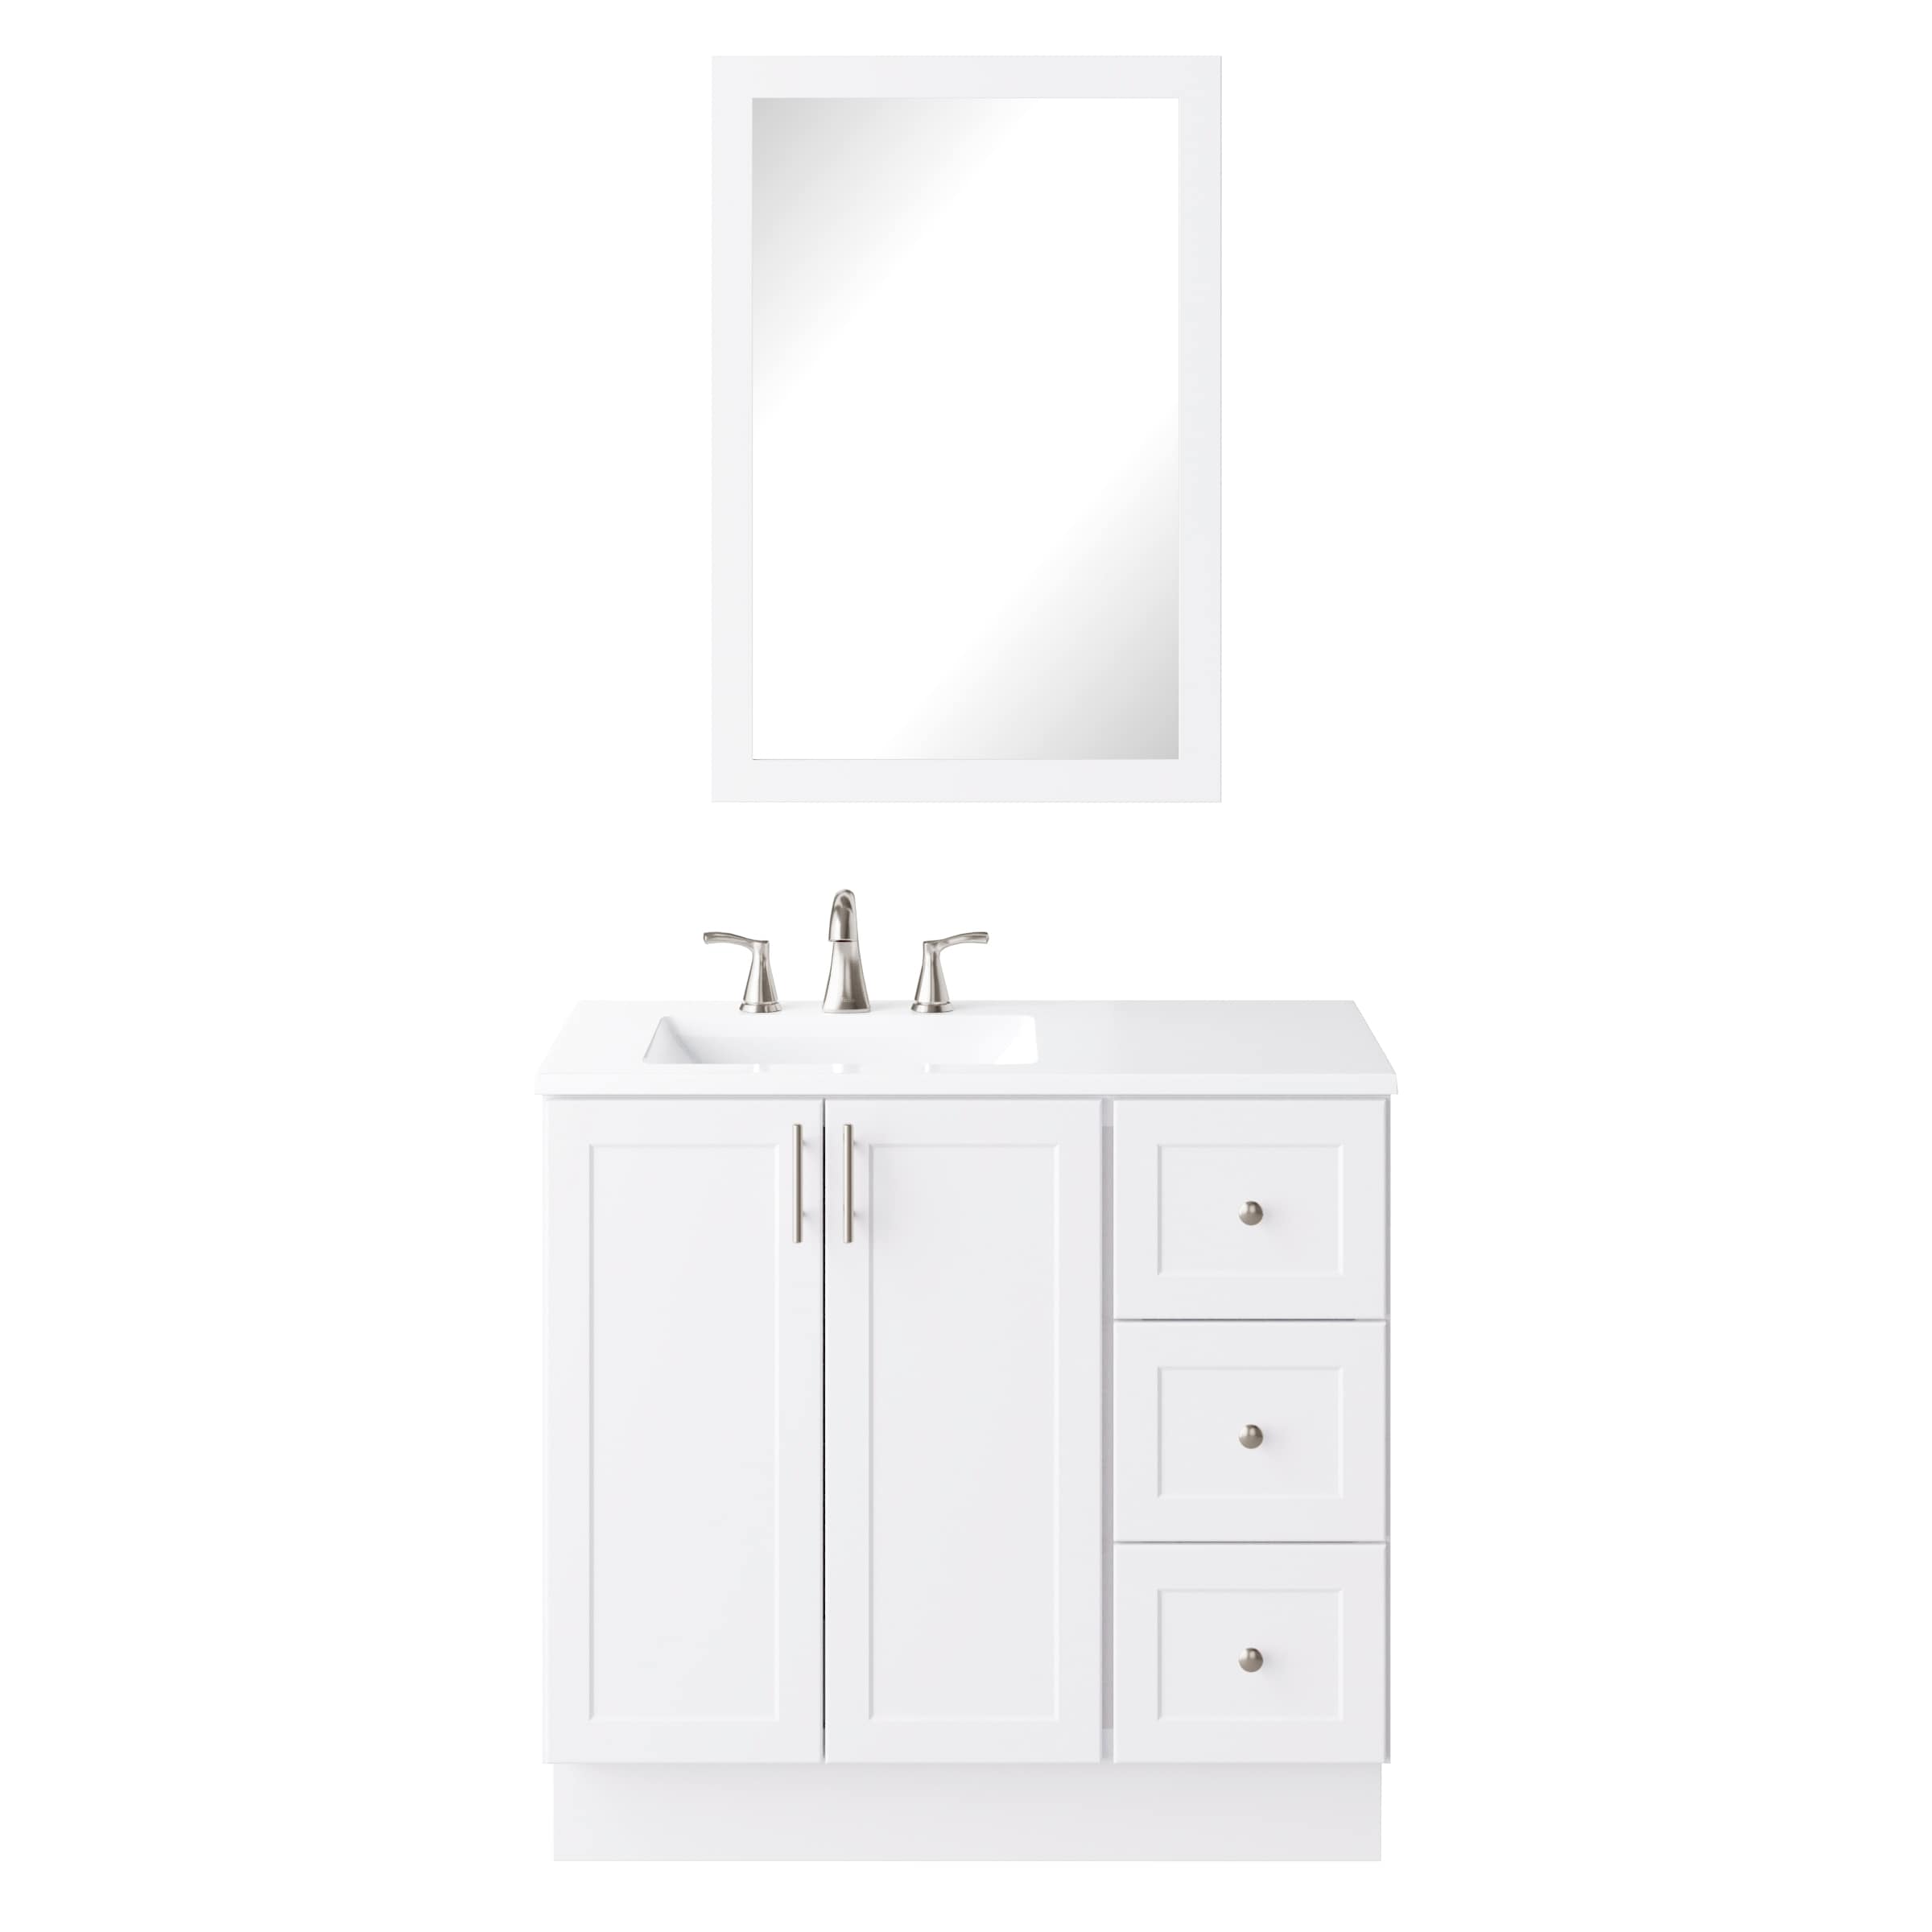 White Single Sink Bathroom Vanity With, Single White Vanity Marble Top